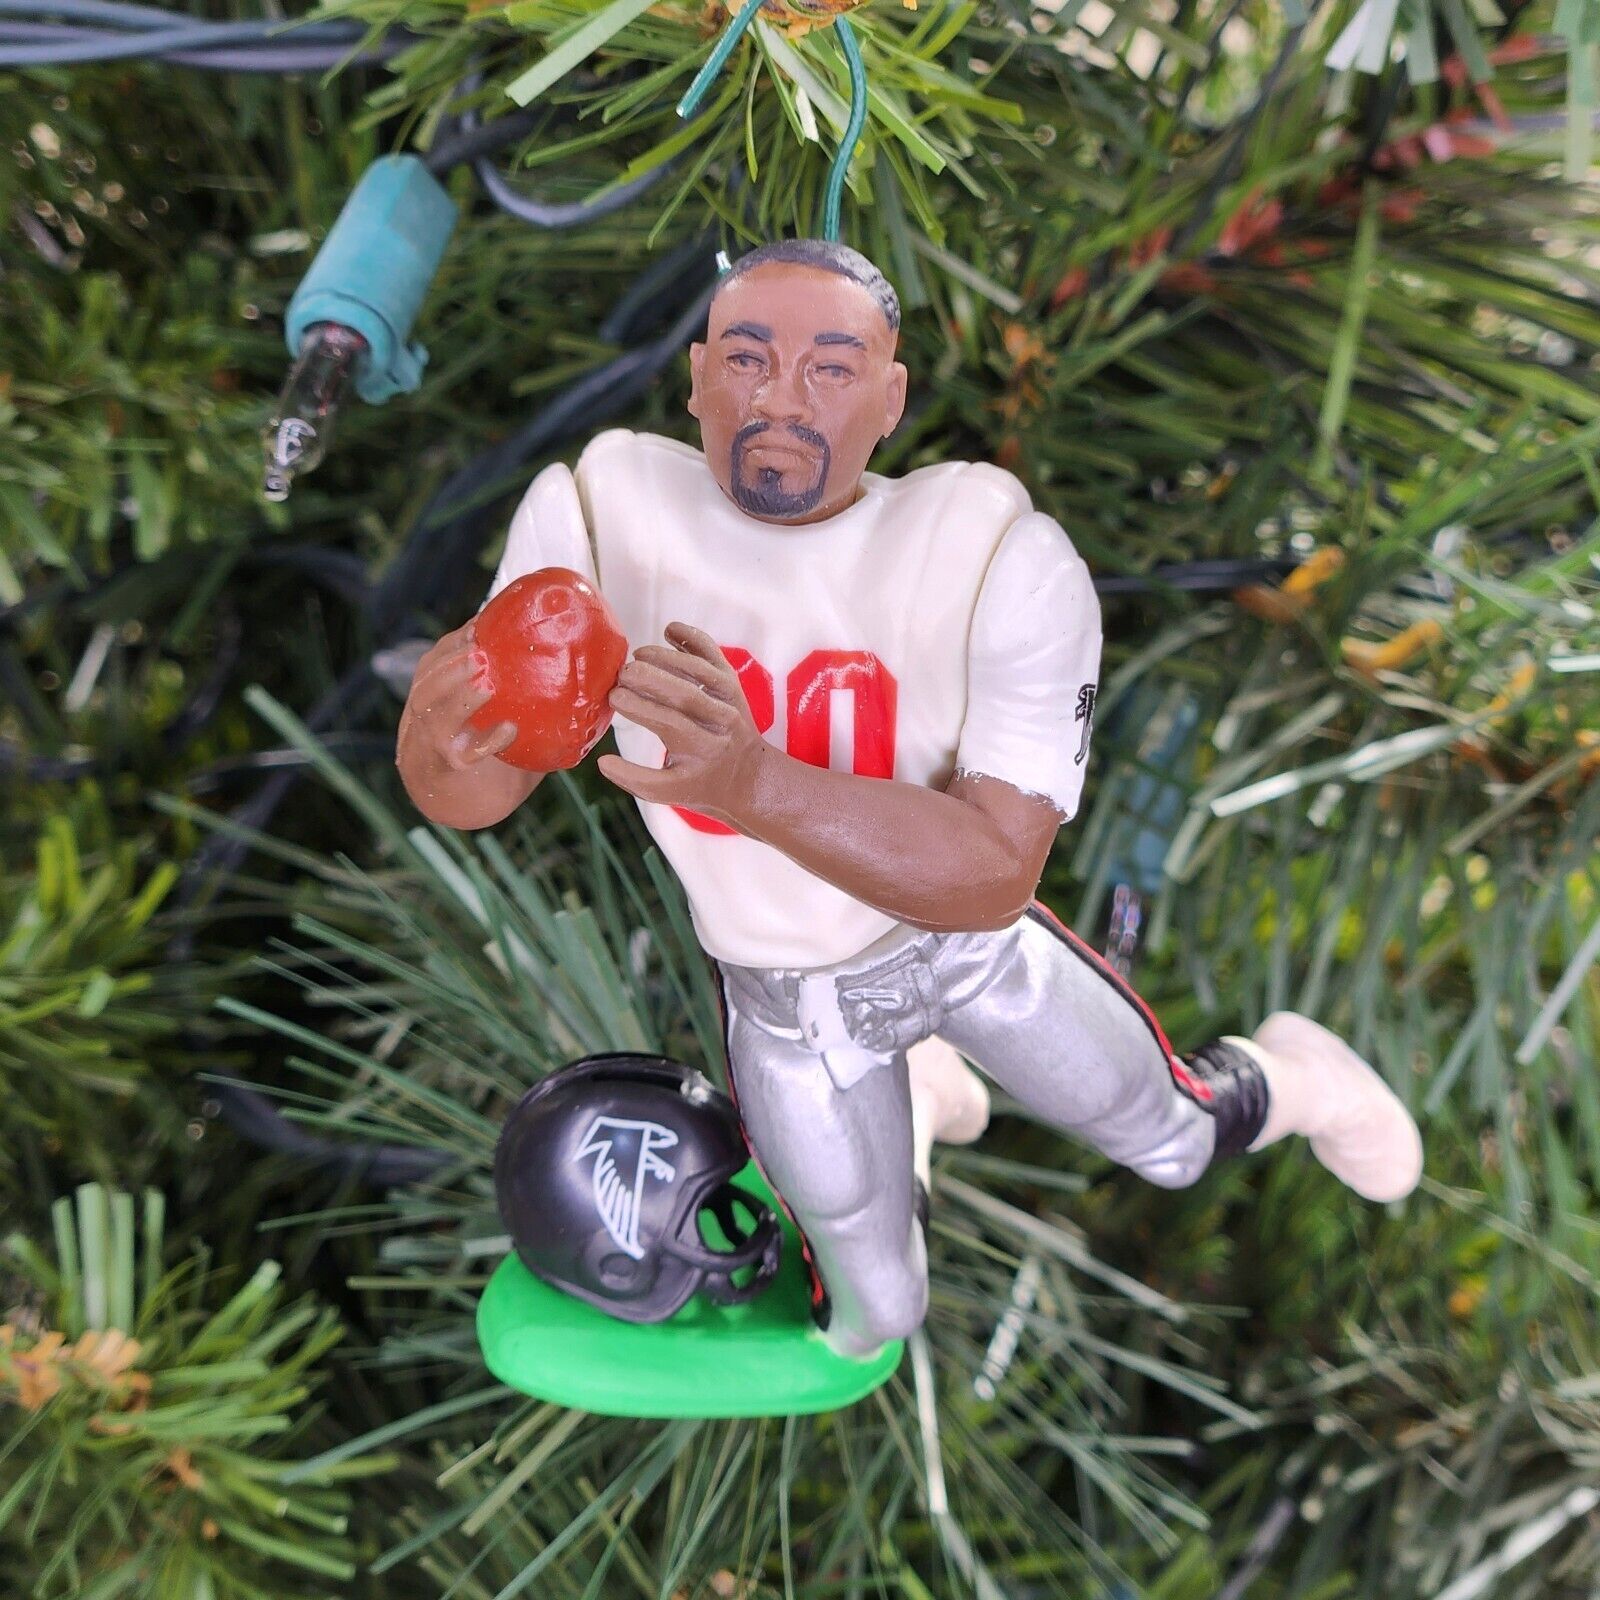 Andre Rison Atlanta Falcon Football NFL Xmas Ornament Holiday Tree vtg Jersey 80